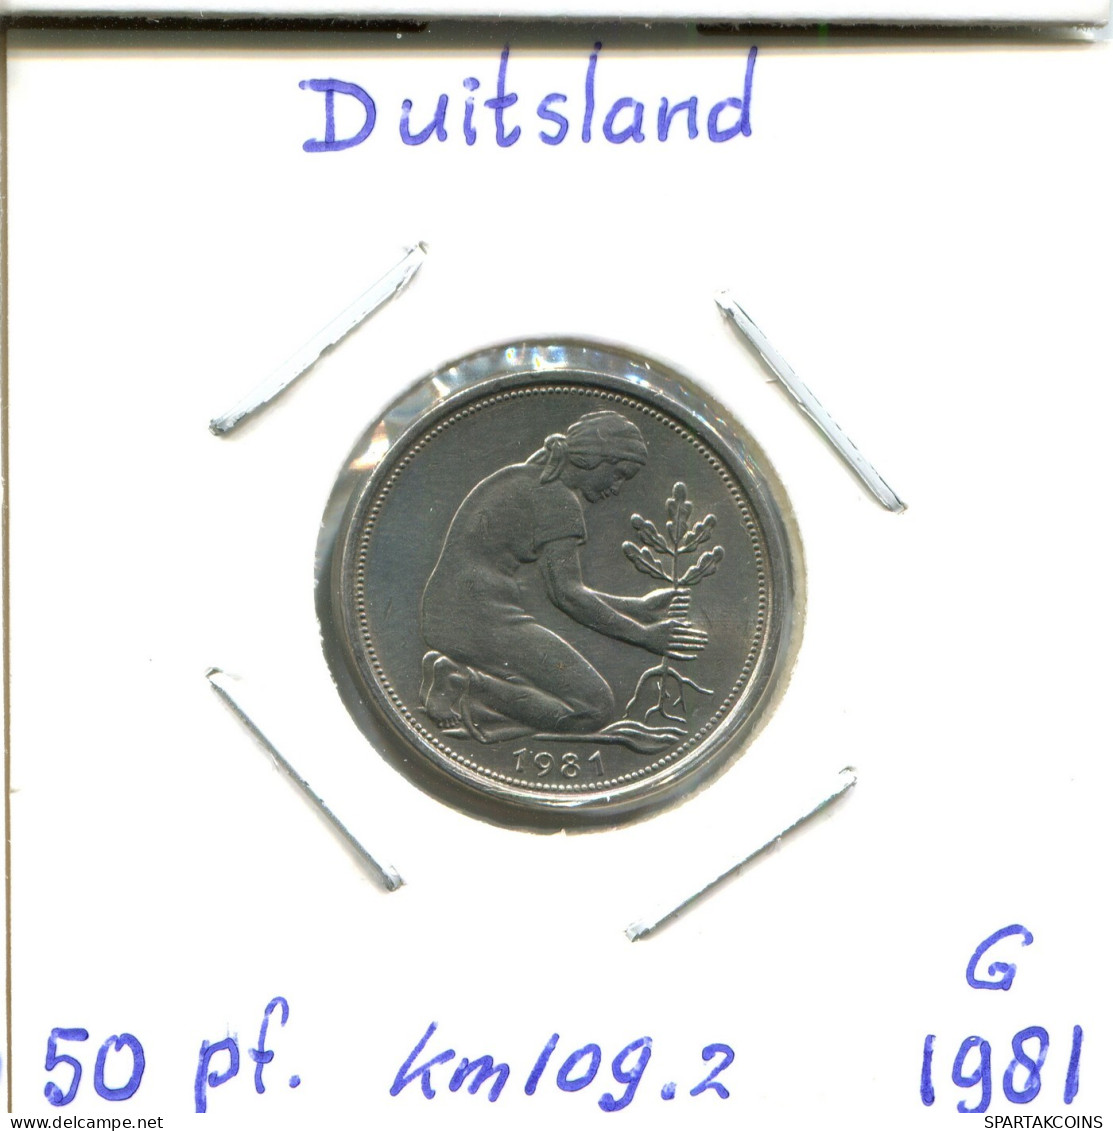 50 PFENNIG 1981 G BRD ALEMANIA Moneda GERMANY #DB601.E.A - 50 Pfennig